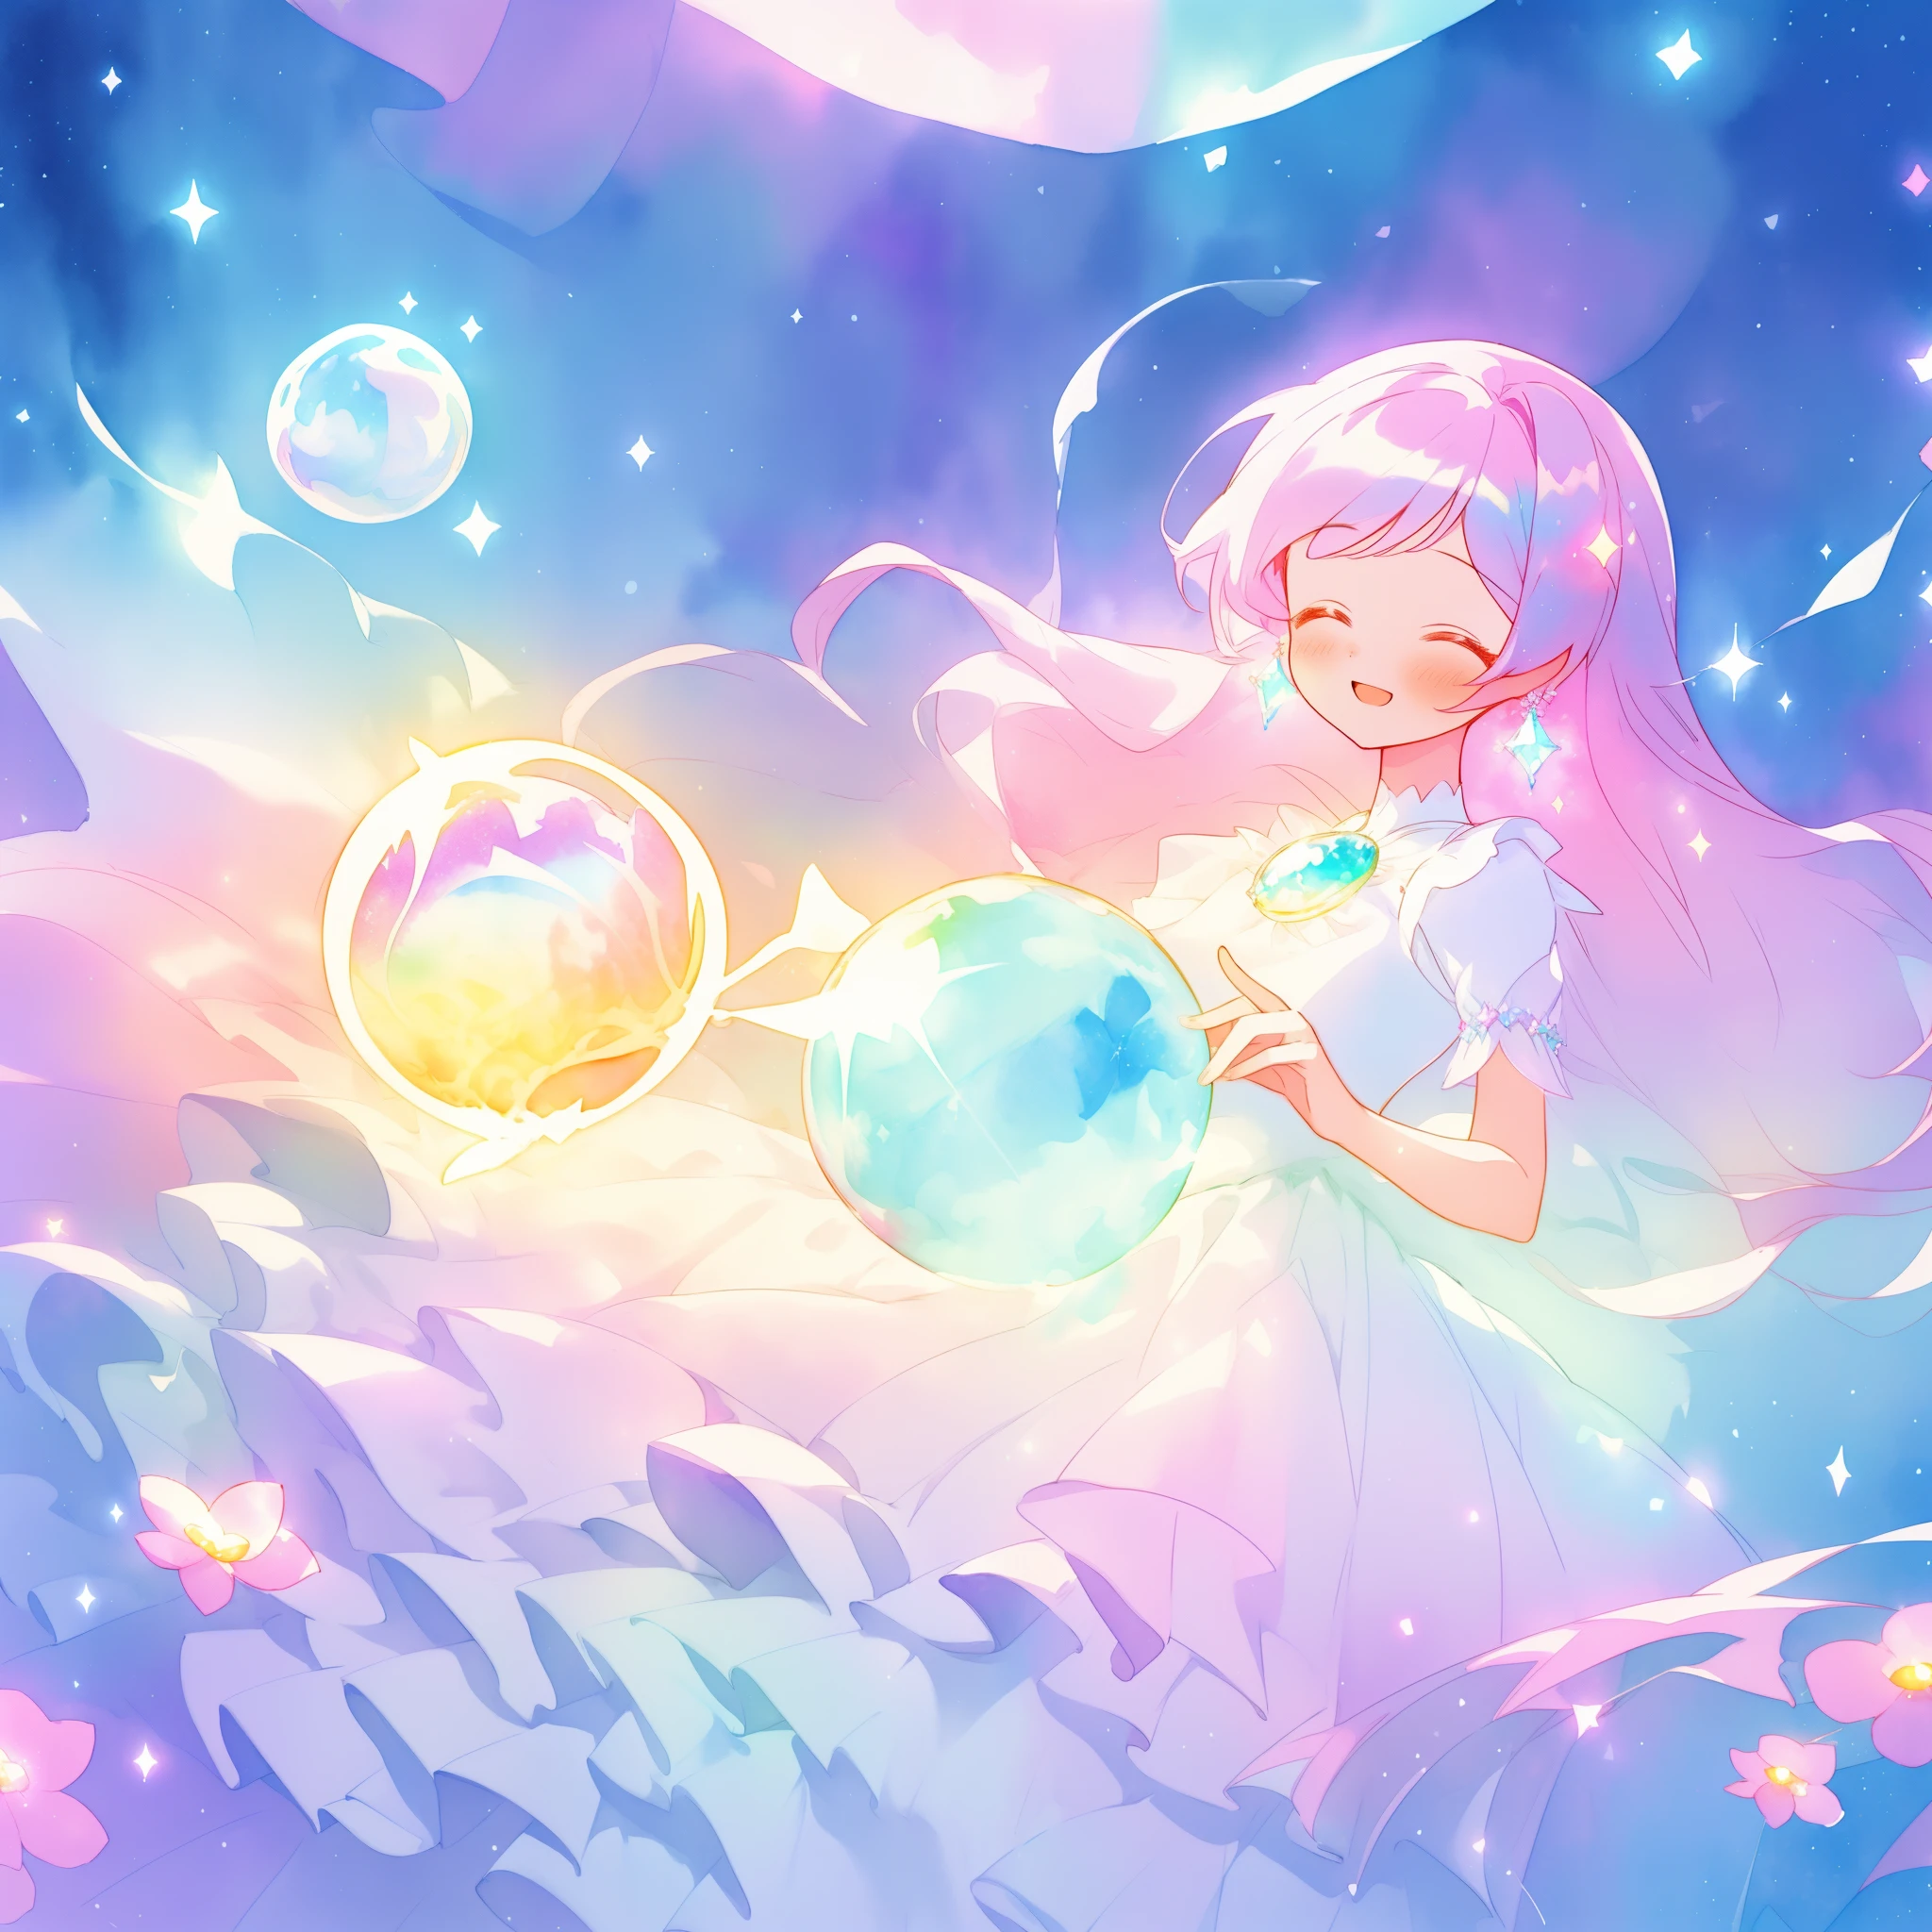 สวย girl in sparkling white dress holding a ขลัง sphere, ((ballgown ที่เป็นประกายระยิบระยับ)), (ขลัง, แปลก), (glowing ขลัง orb), ผมยาวสีสันสดใส, พื้นหลังแฟนตาซีสีสันสดใส, ภาพประกอบสีน้ำ, สไตล์ศิลปะดิสนีย์, มีออร่าเปล่งประกายรอบตัวเธอ, ไฟเรืองแสง, สวย digital illustration, แฟนตาซี ภูมิทัศน์ ต้นไม้ ดอกไม้ ในอีกโลกหนึ่ง, สวย, ผลงานชิ้นเอก, คุณภาพดีที่สุด, อะนิเมะสไตล์ดิสนีย์